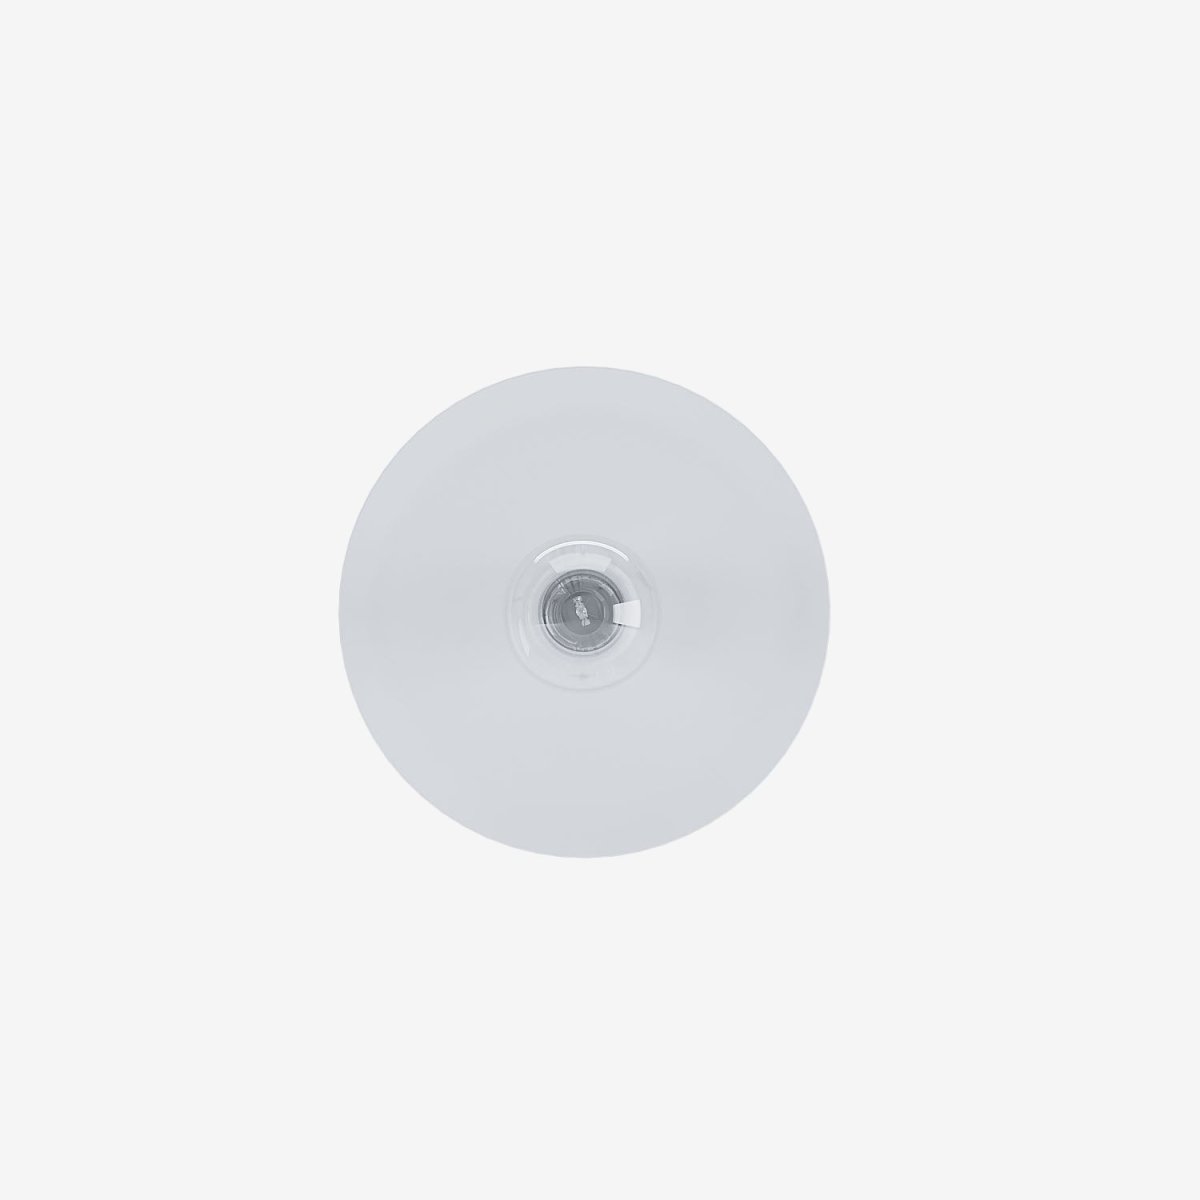 Lampe murale ronde plate moderne ou plafonnier disque design minimaliste métal blanc - Potiron Paris, le luminaire design de la décoration d'intérieur chic et moderne